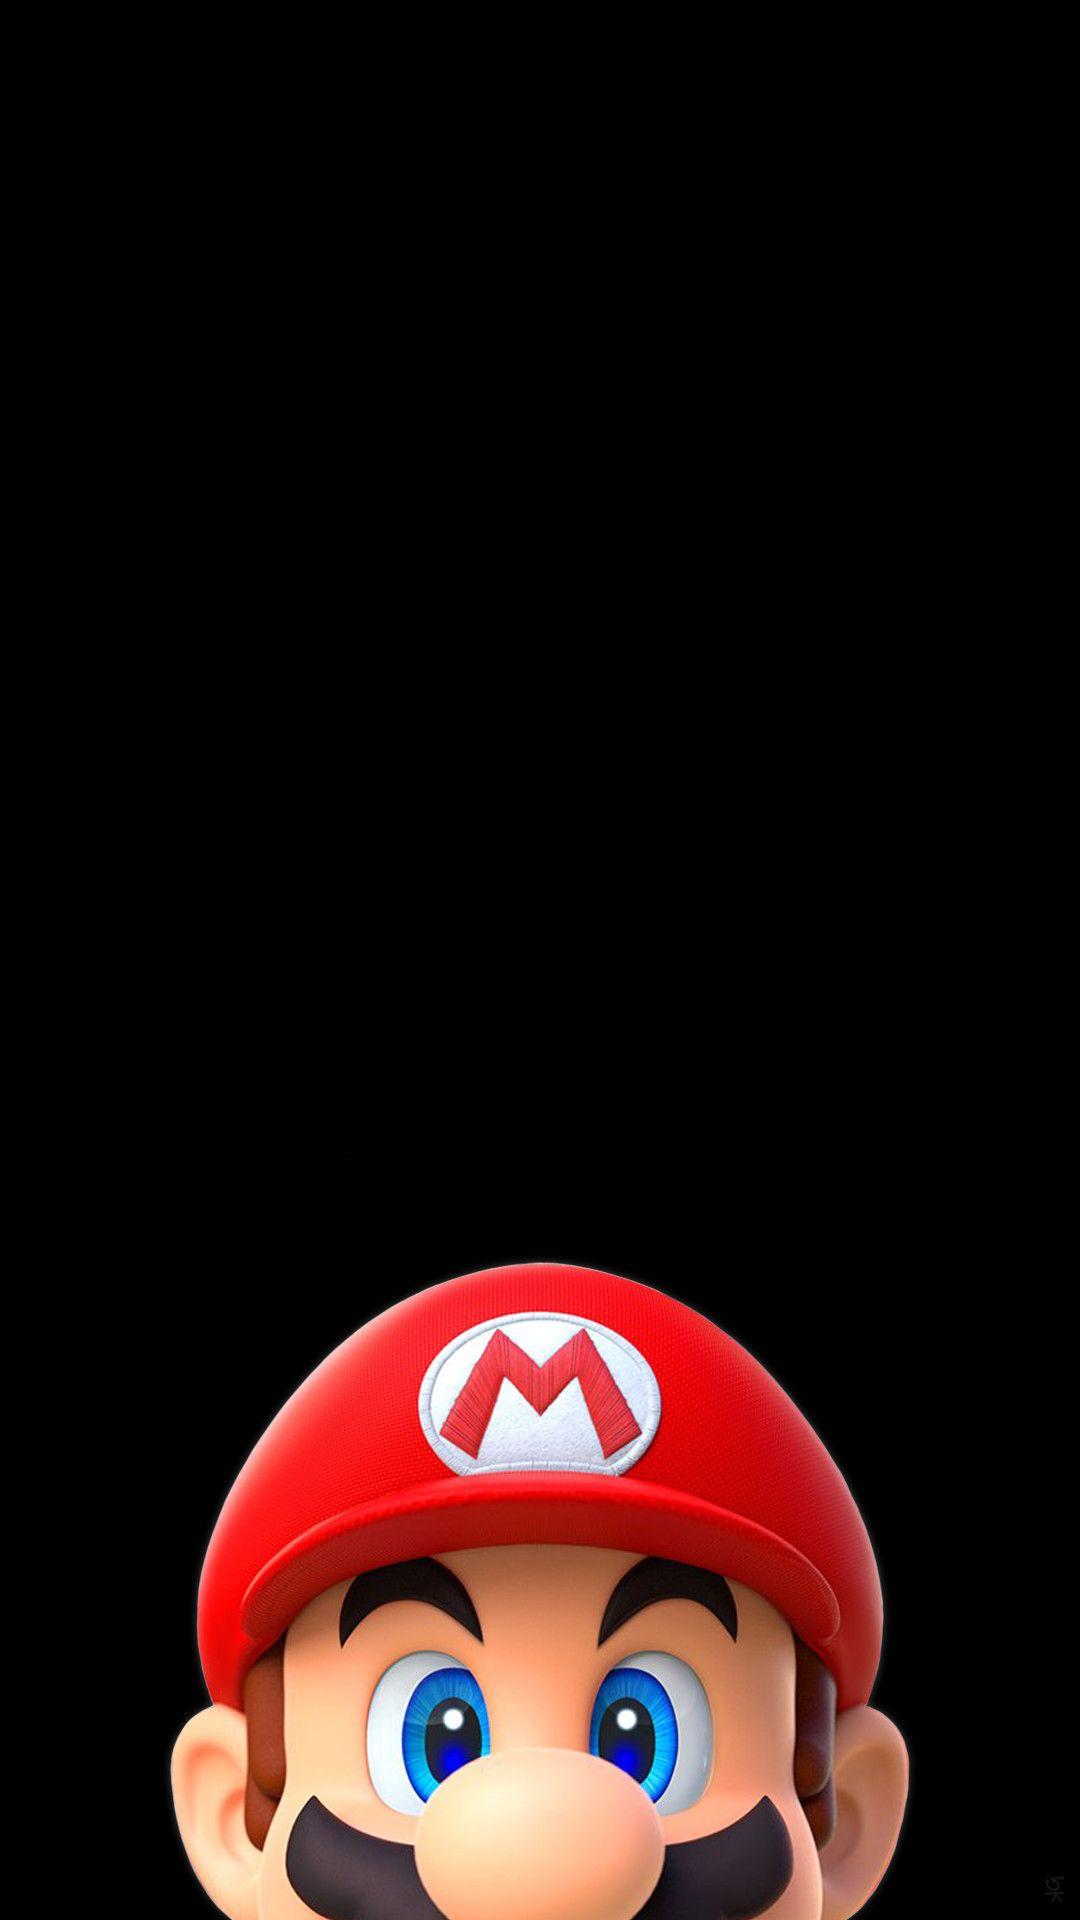 Mario iPhone Wallpaper. Game wallpaper iphone, Super mario run, Mario run